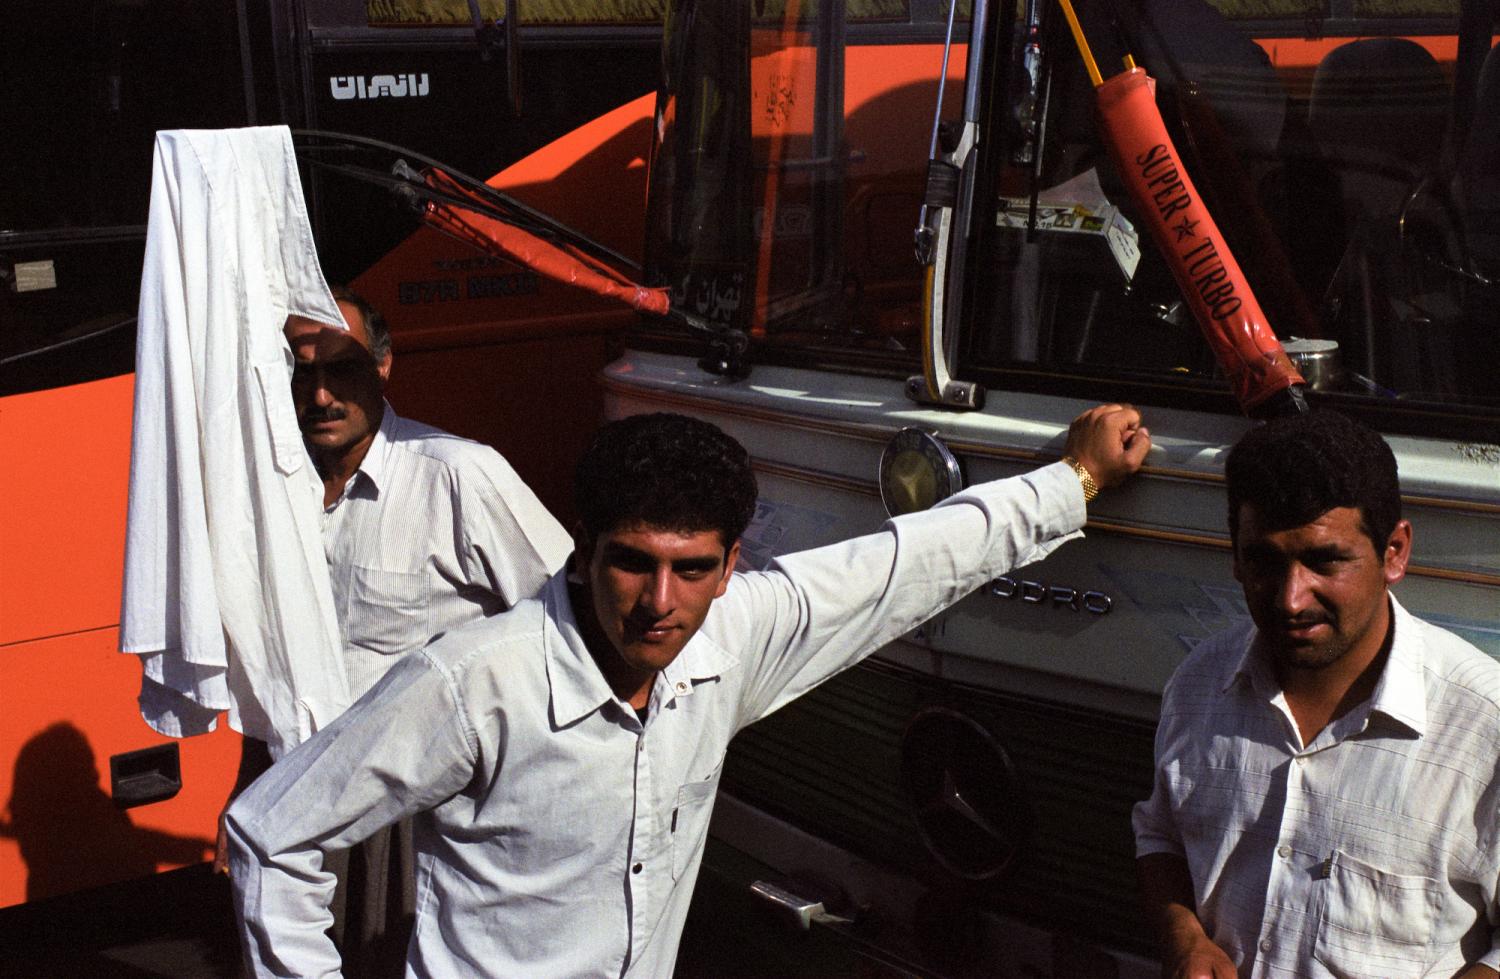 A la gare routière, trois hommes parmi les bus, une chemise blanche accrochée à un essuie-glace. Téhéran, Iran, juillet 2006.